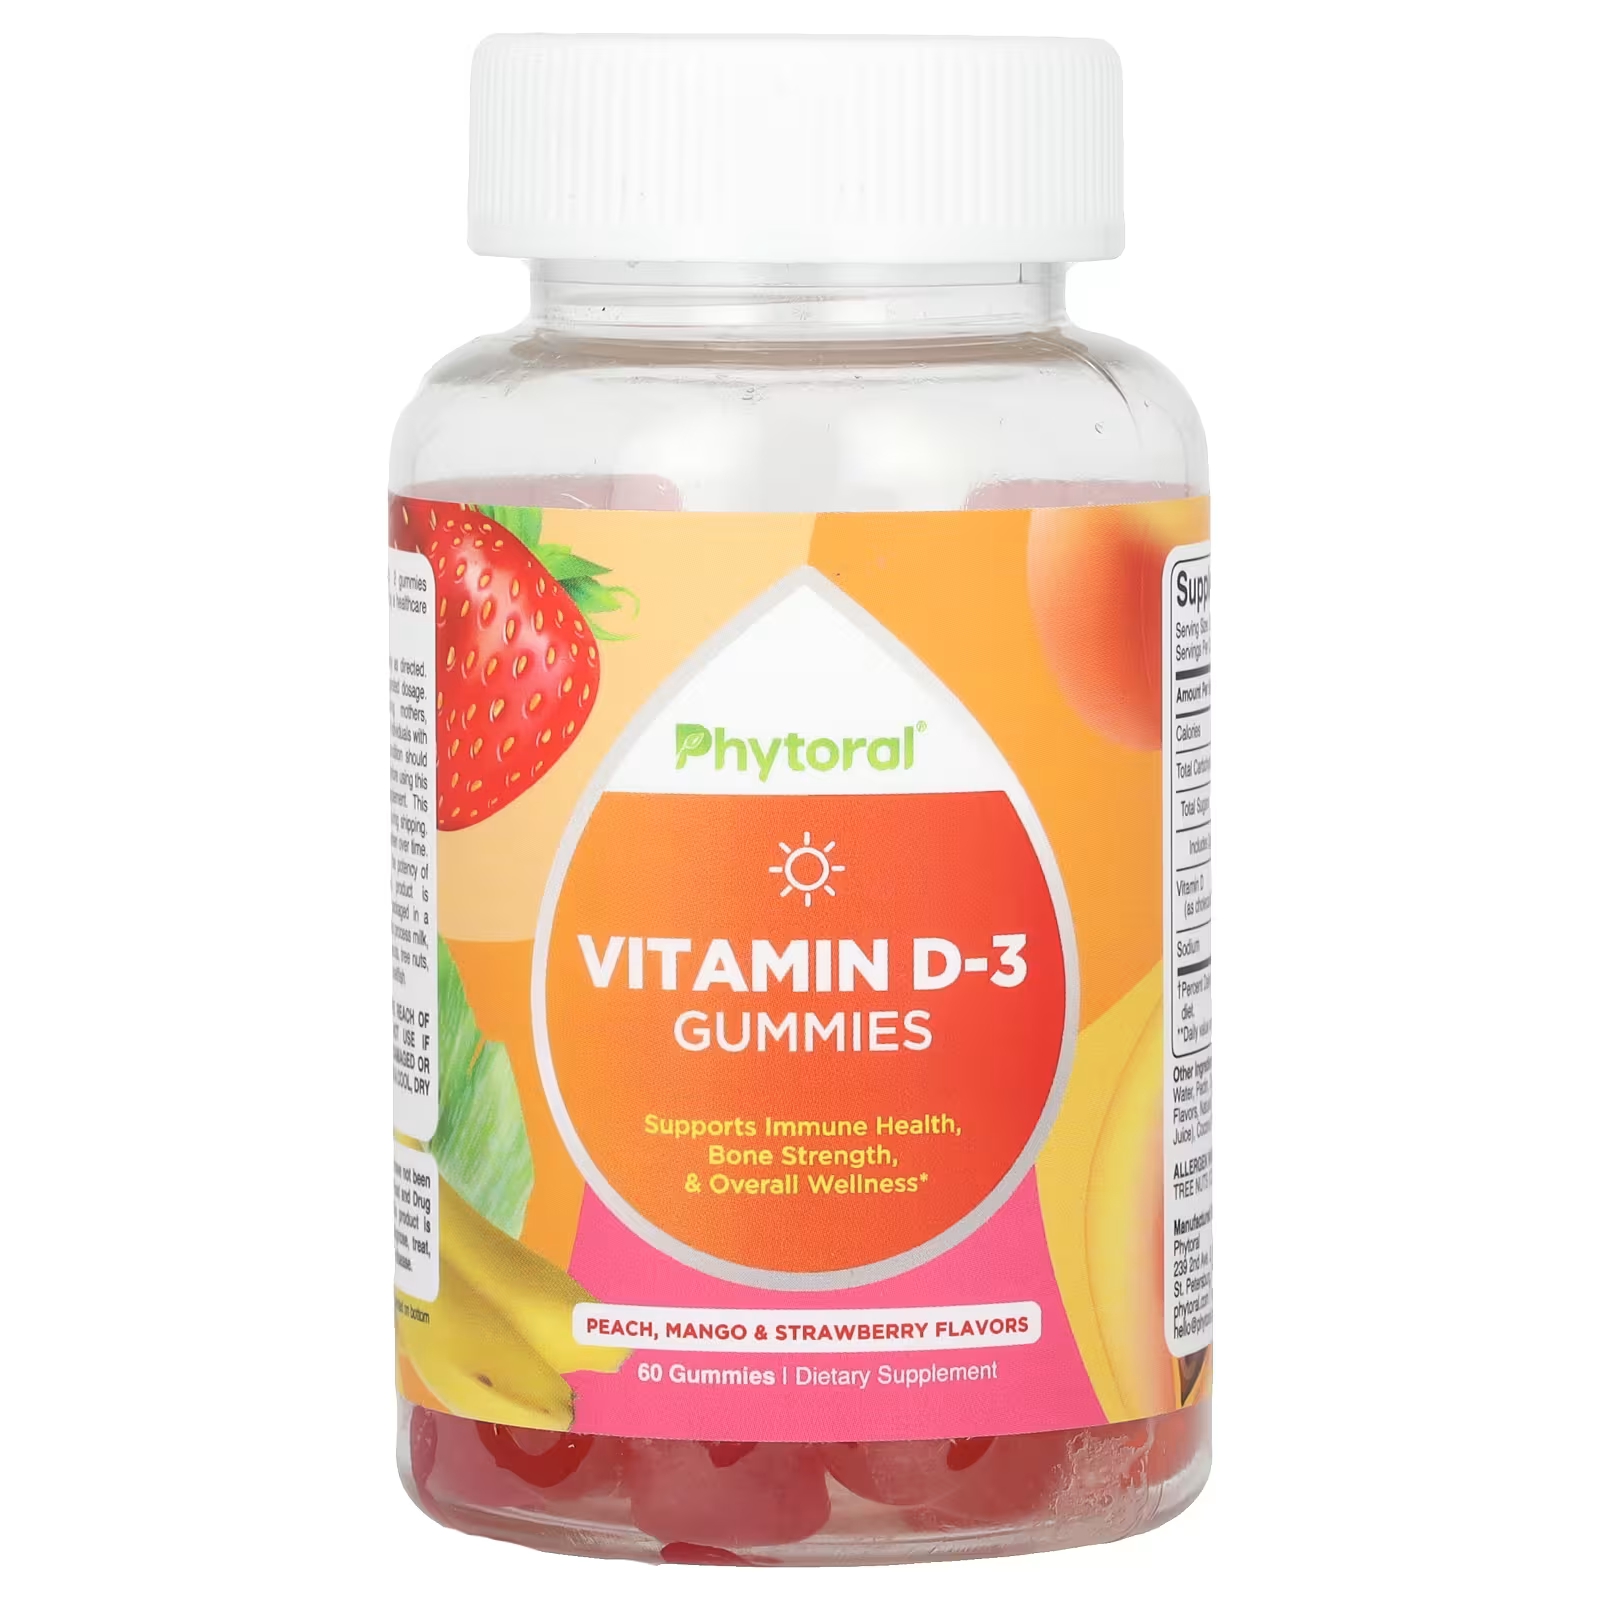 Пищевая добавка Phytoral с витамином D-3, персик, манго и клубника, 60 жевательных конфет